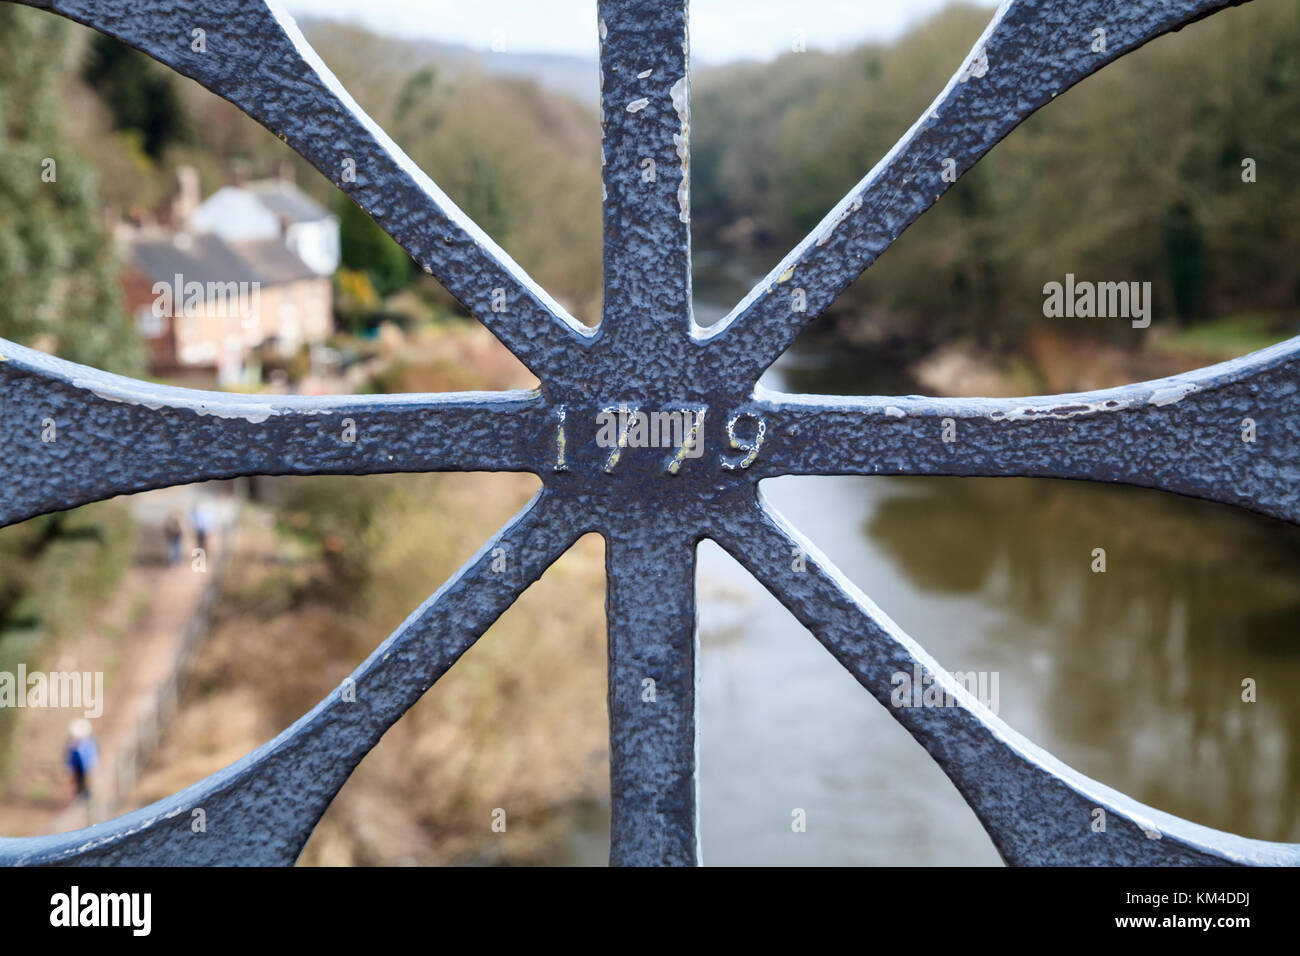 Detail of the Iron railings of the Thomas Telford bridge at Ironbridge, Shropshire, England Stock Photo